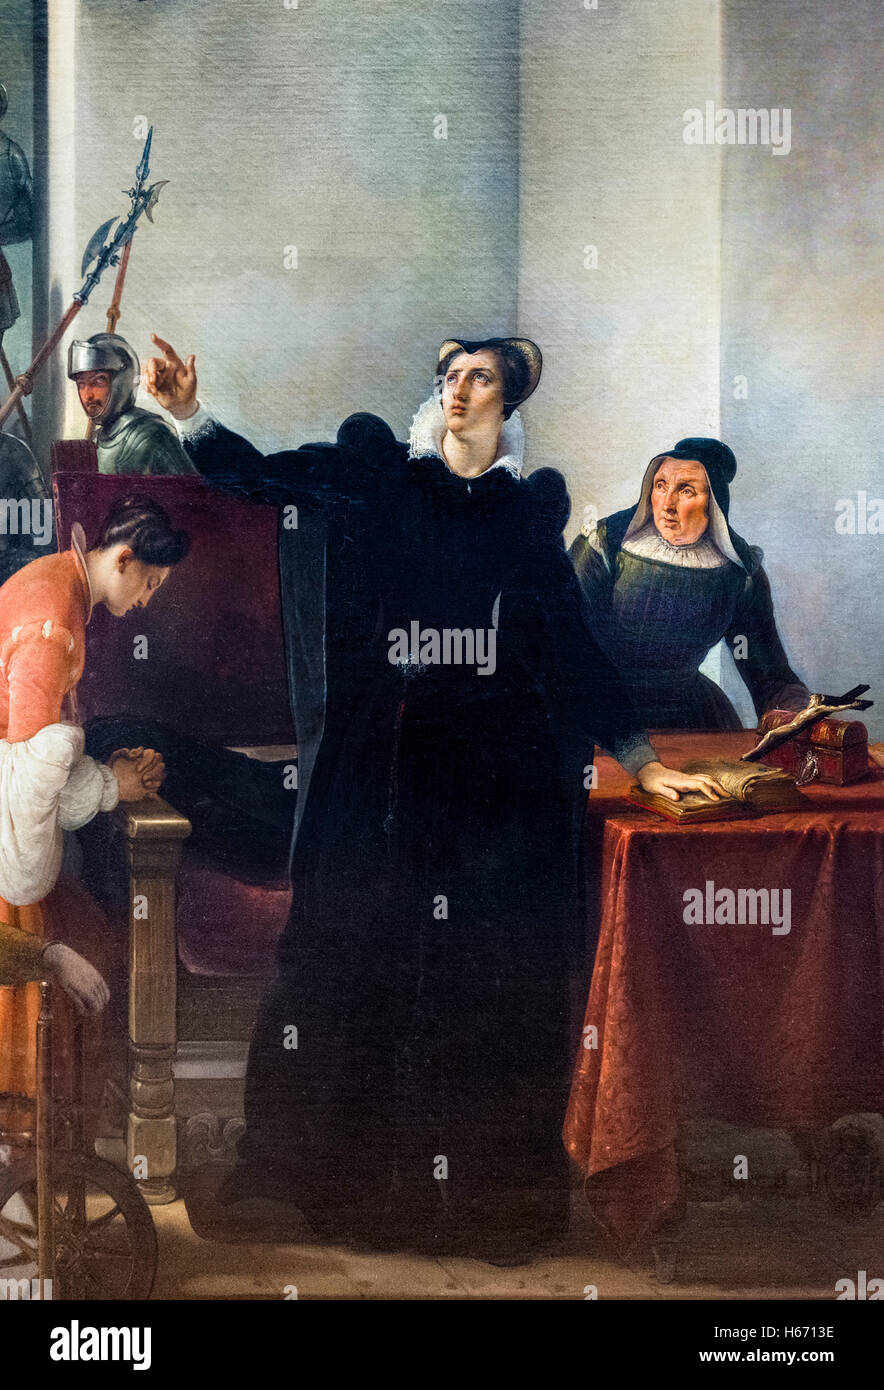 "Mary Stuart (Mary Queen of Scots) annonce de son innocence à sa mort La peine' par Francesco Hayez, huile sur toile, 1832. C'est un détail d'une grande peinture, H6713F. Banque D'Images